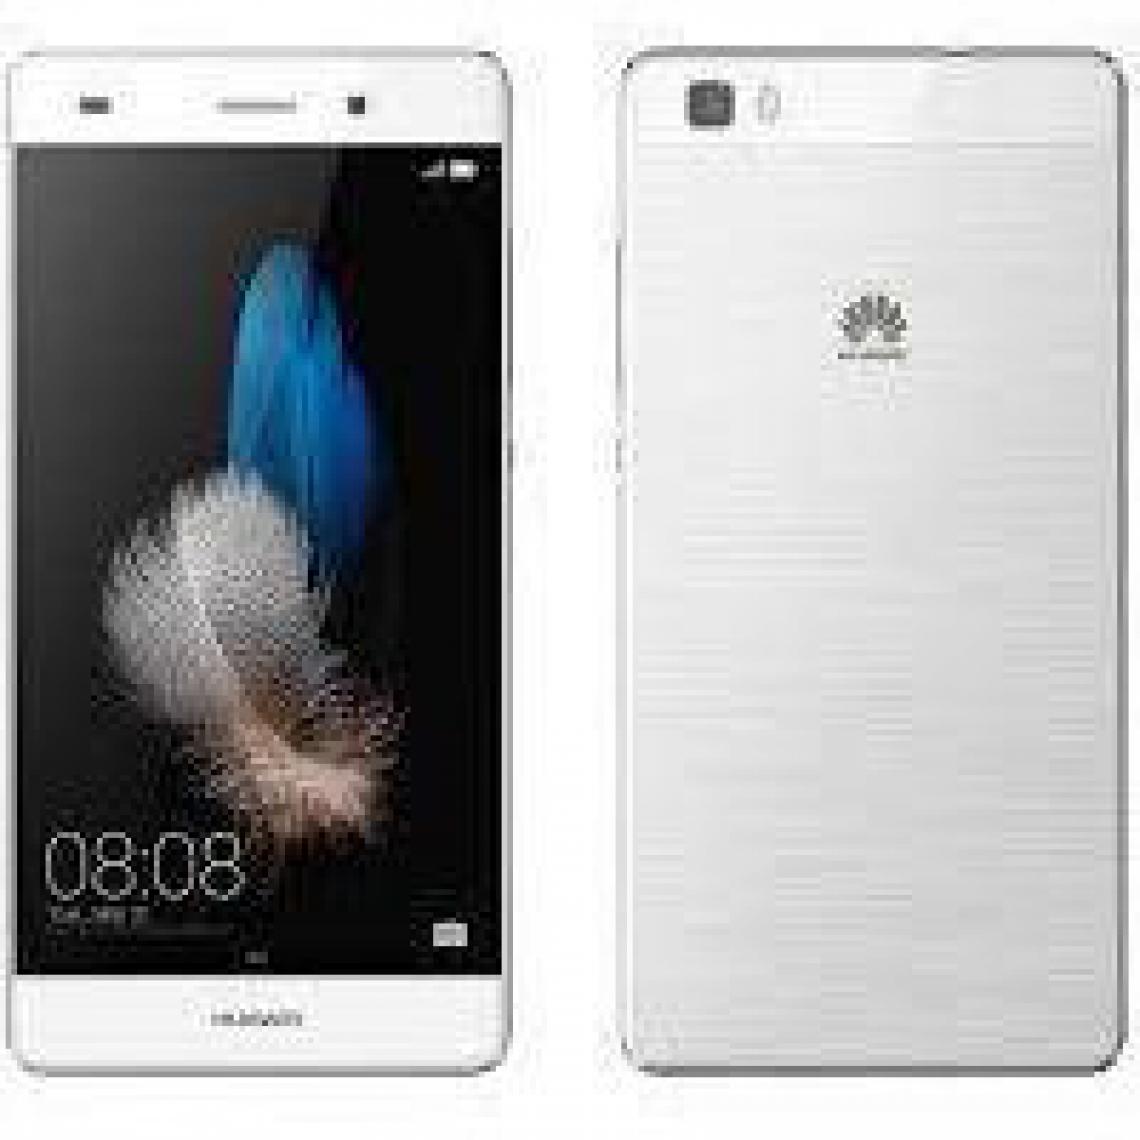 Huawei - Huawei P8 Lite 2015 16 Go Blanc - débloqué tout opérateur - Smartphone Android